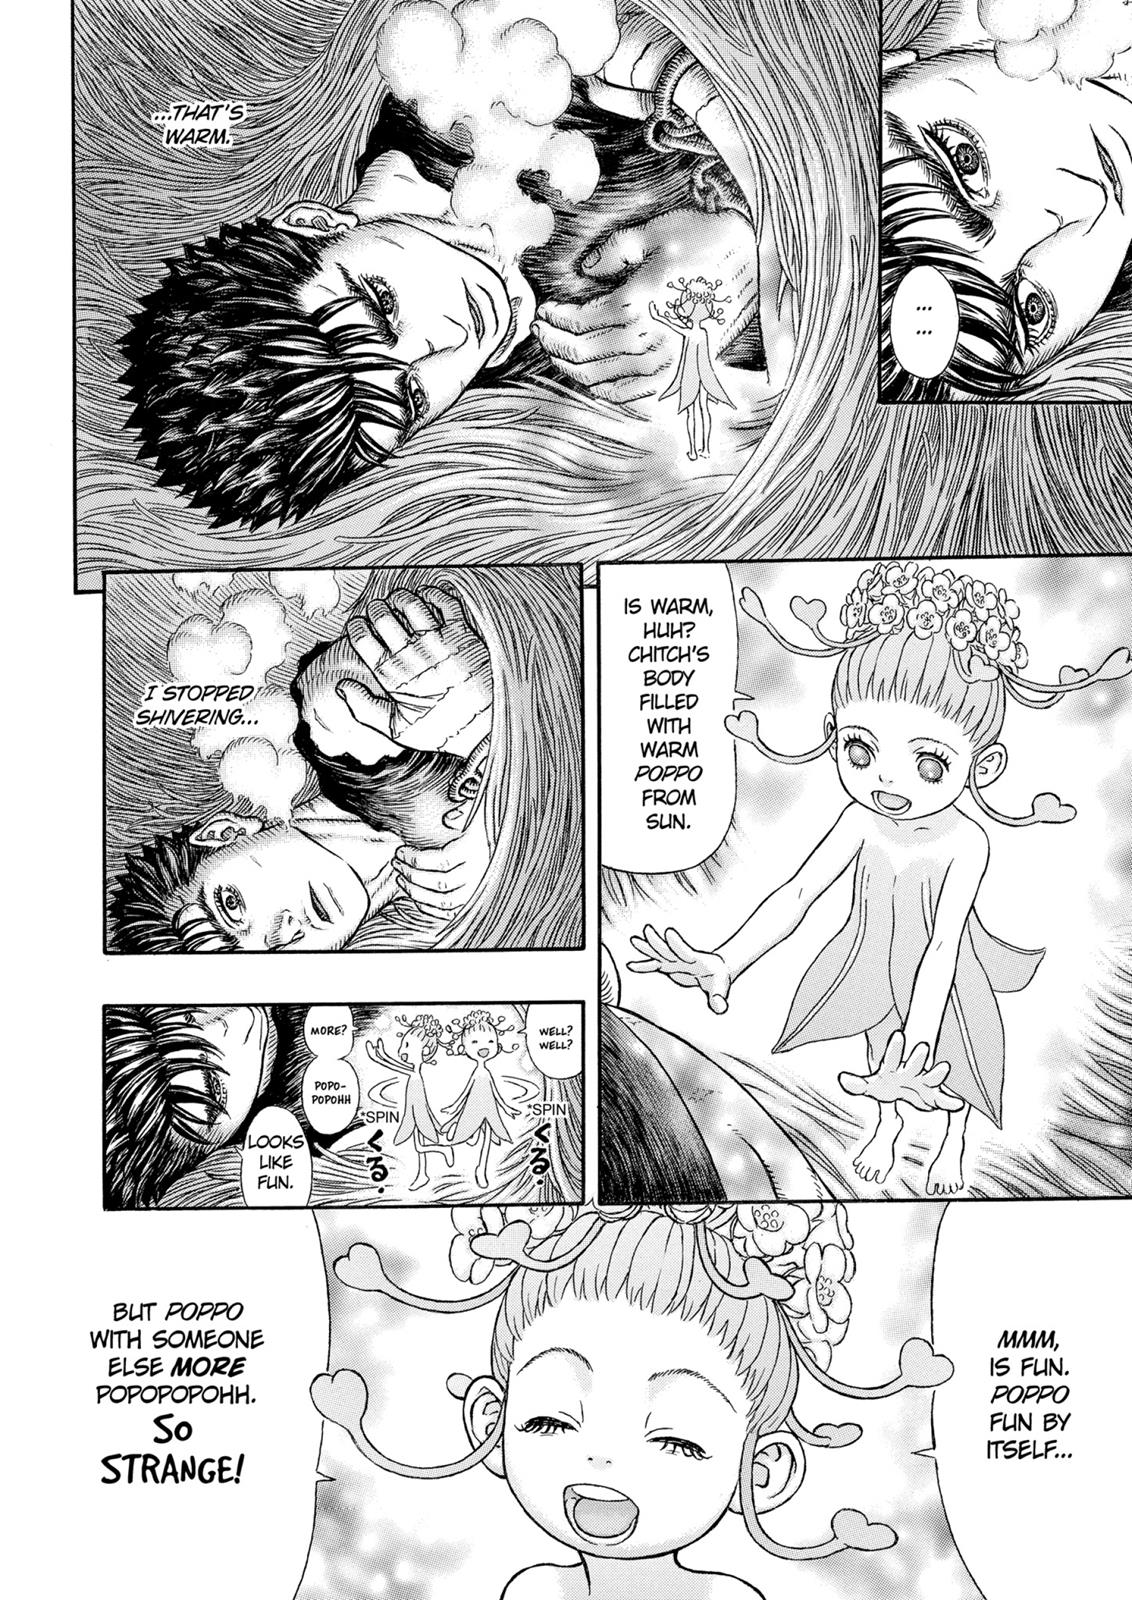 Berserk Manga Chapter 330 image 11